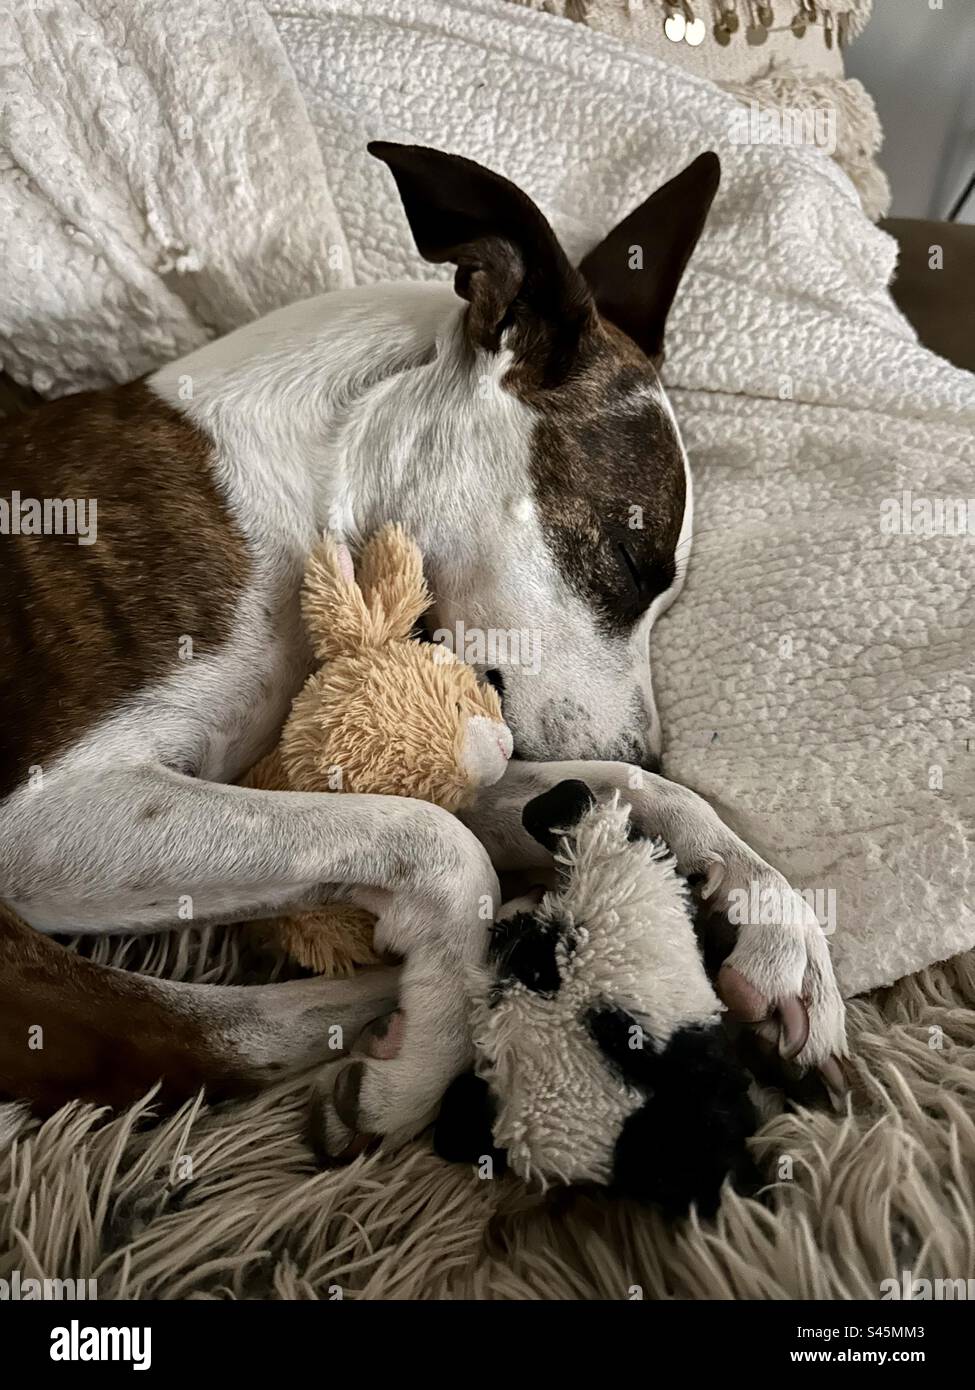 Mignon chien mordant brun et blanc dormant et se blottissant avec des animaux en peluche sur un oreiller Banque D'Images